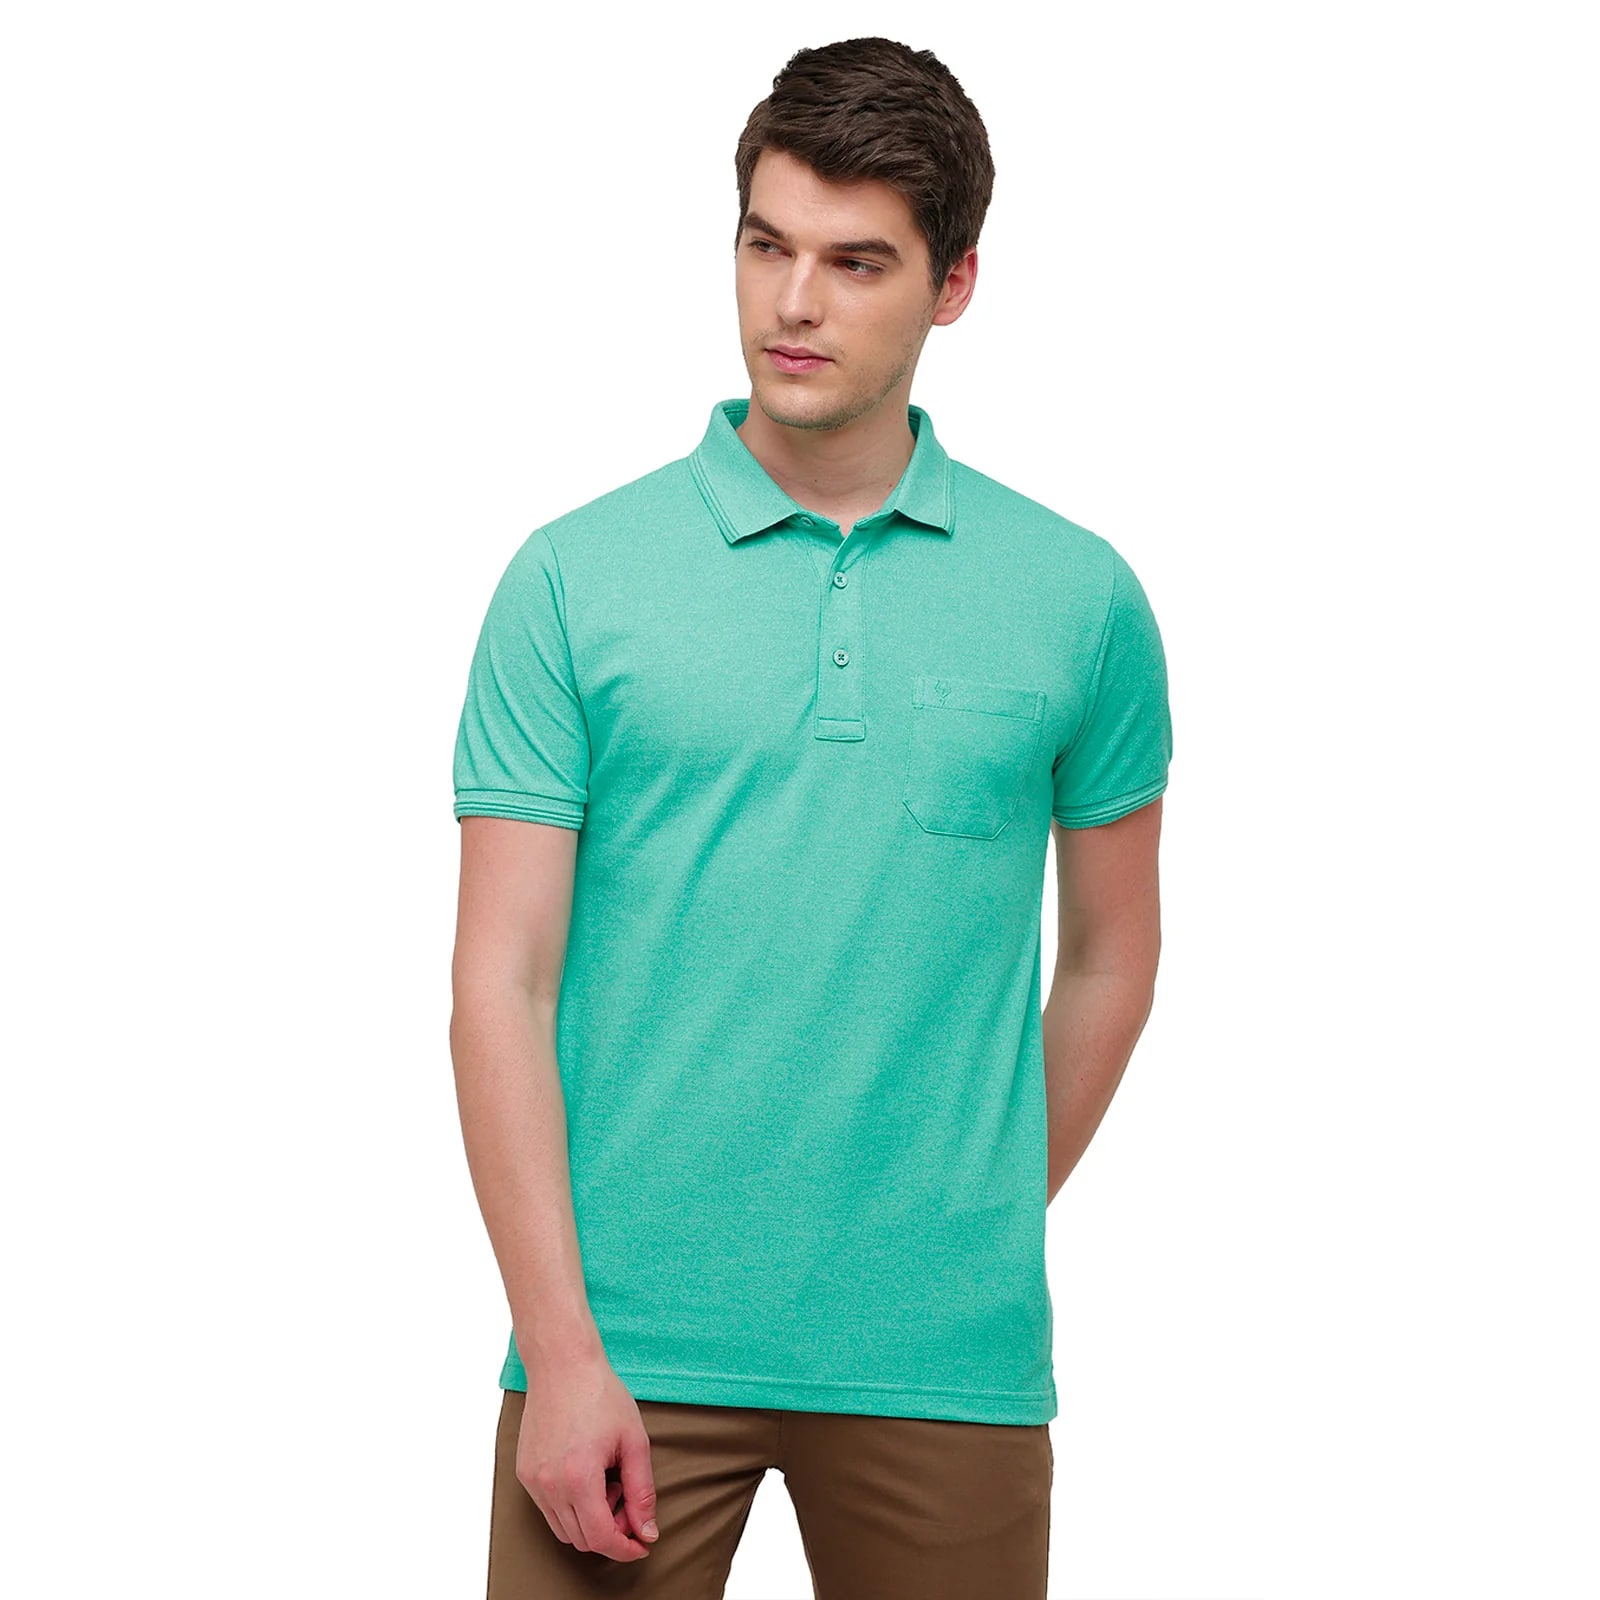 T-shirt Classic Polo Men's Aqua Blue Trendy Grindle Polo Half Sleeve Slim Fit T-Shirt | Proten - Aqua